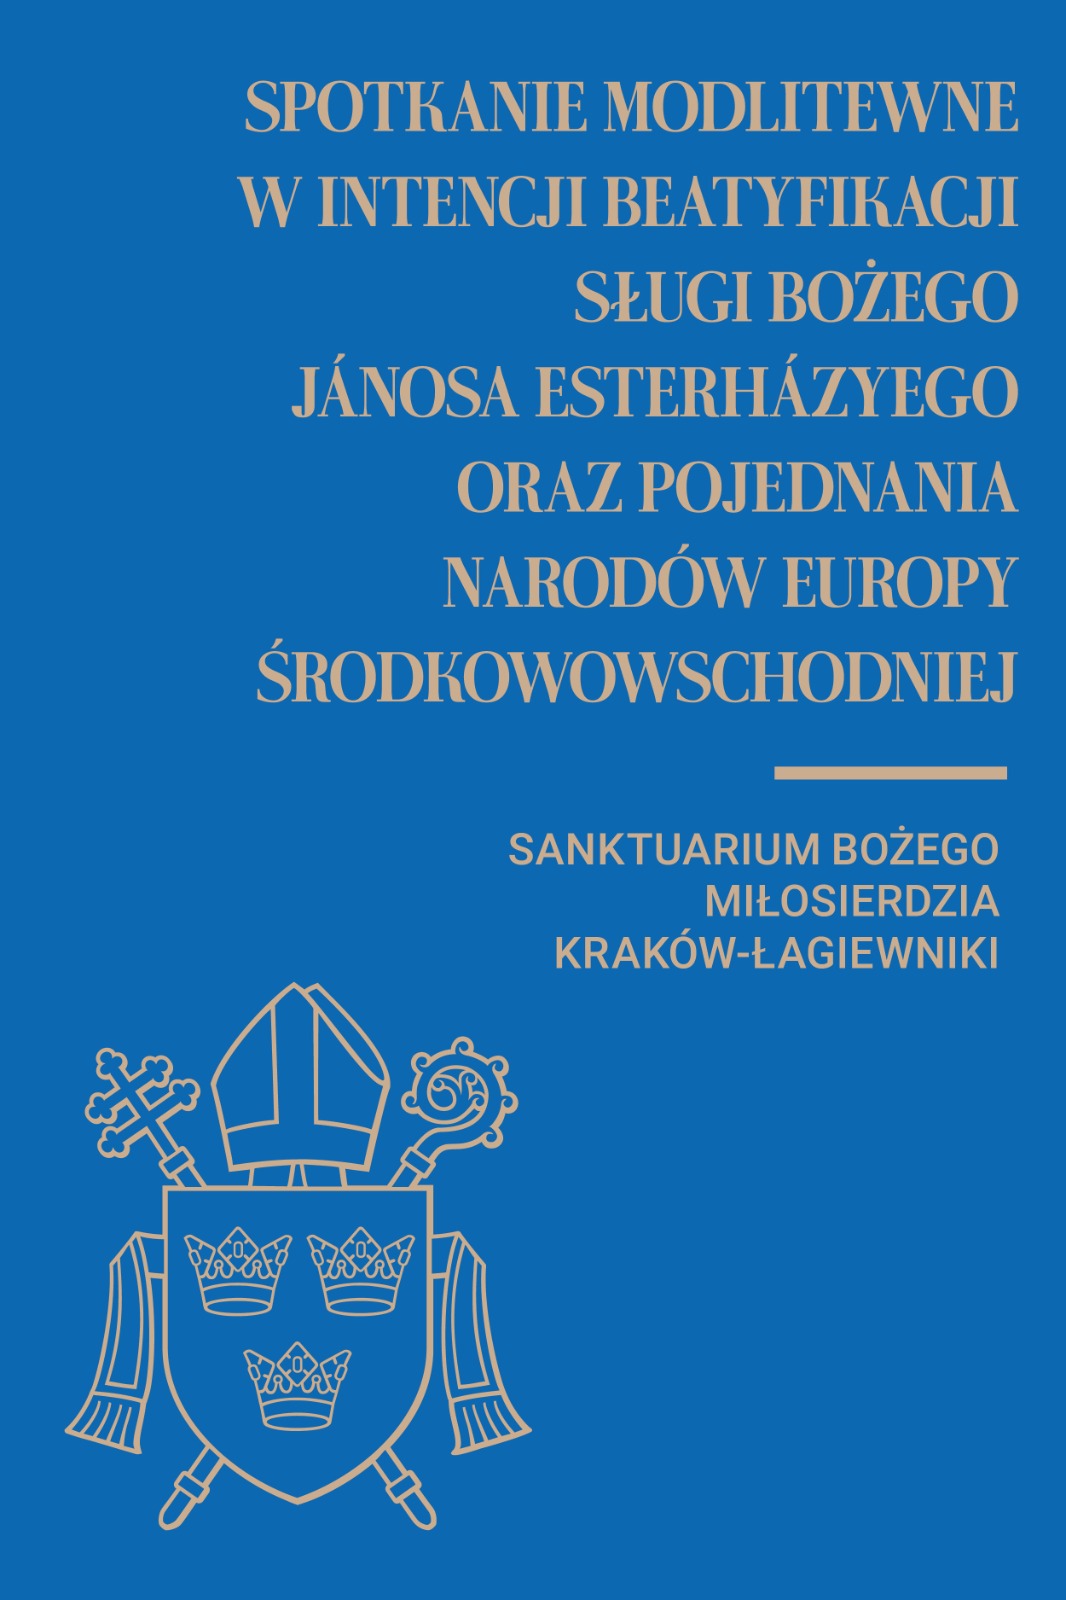 Spotkanie modlitewne w intencji beatyfikacji Jánosa Esterházyego oraz pojednania Narodów Europy Środkowowschodniej